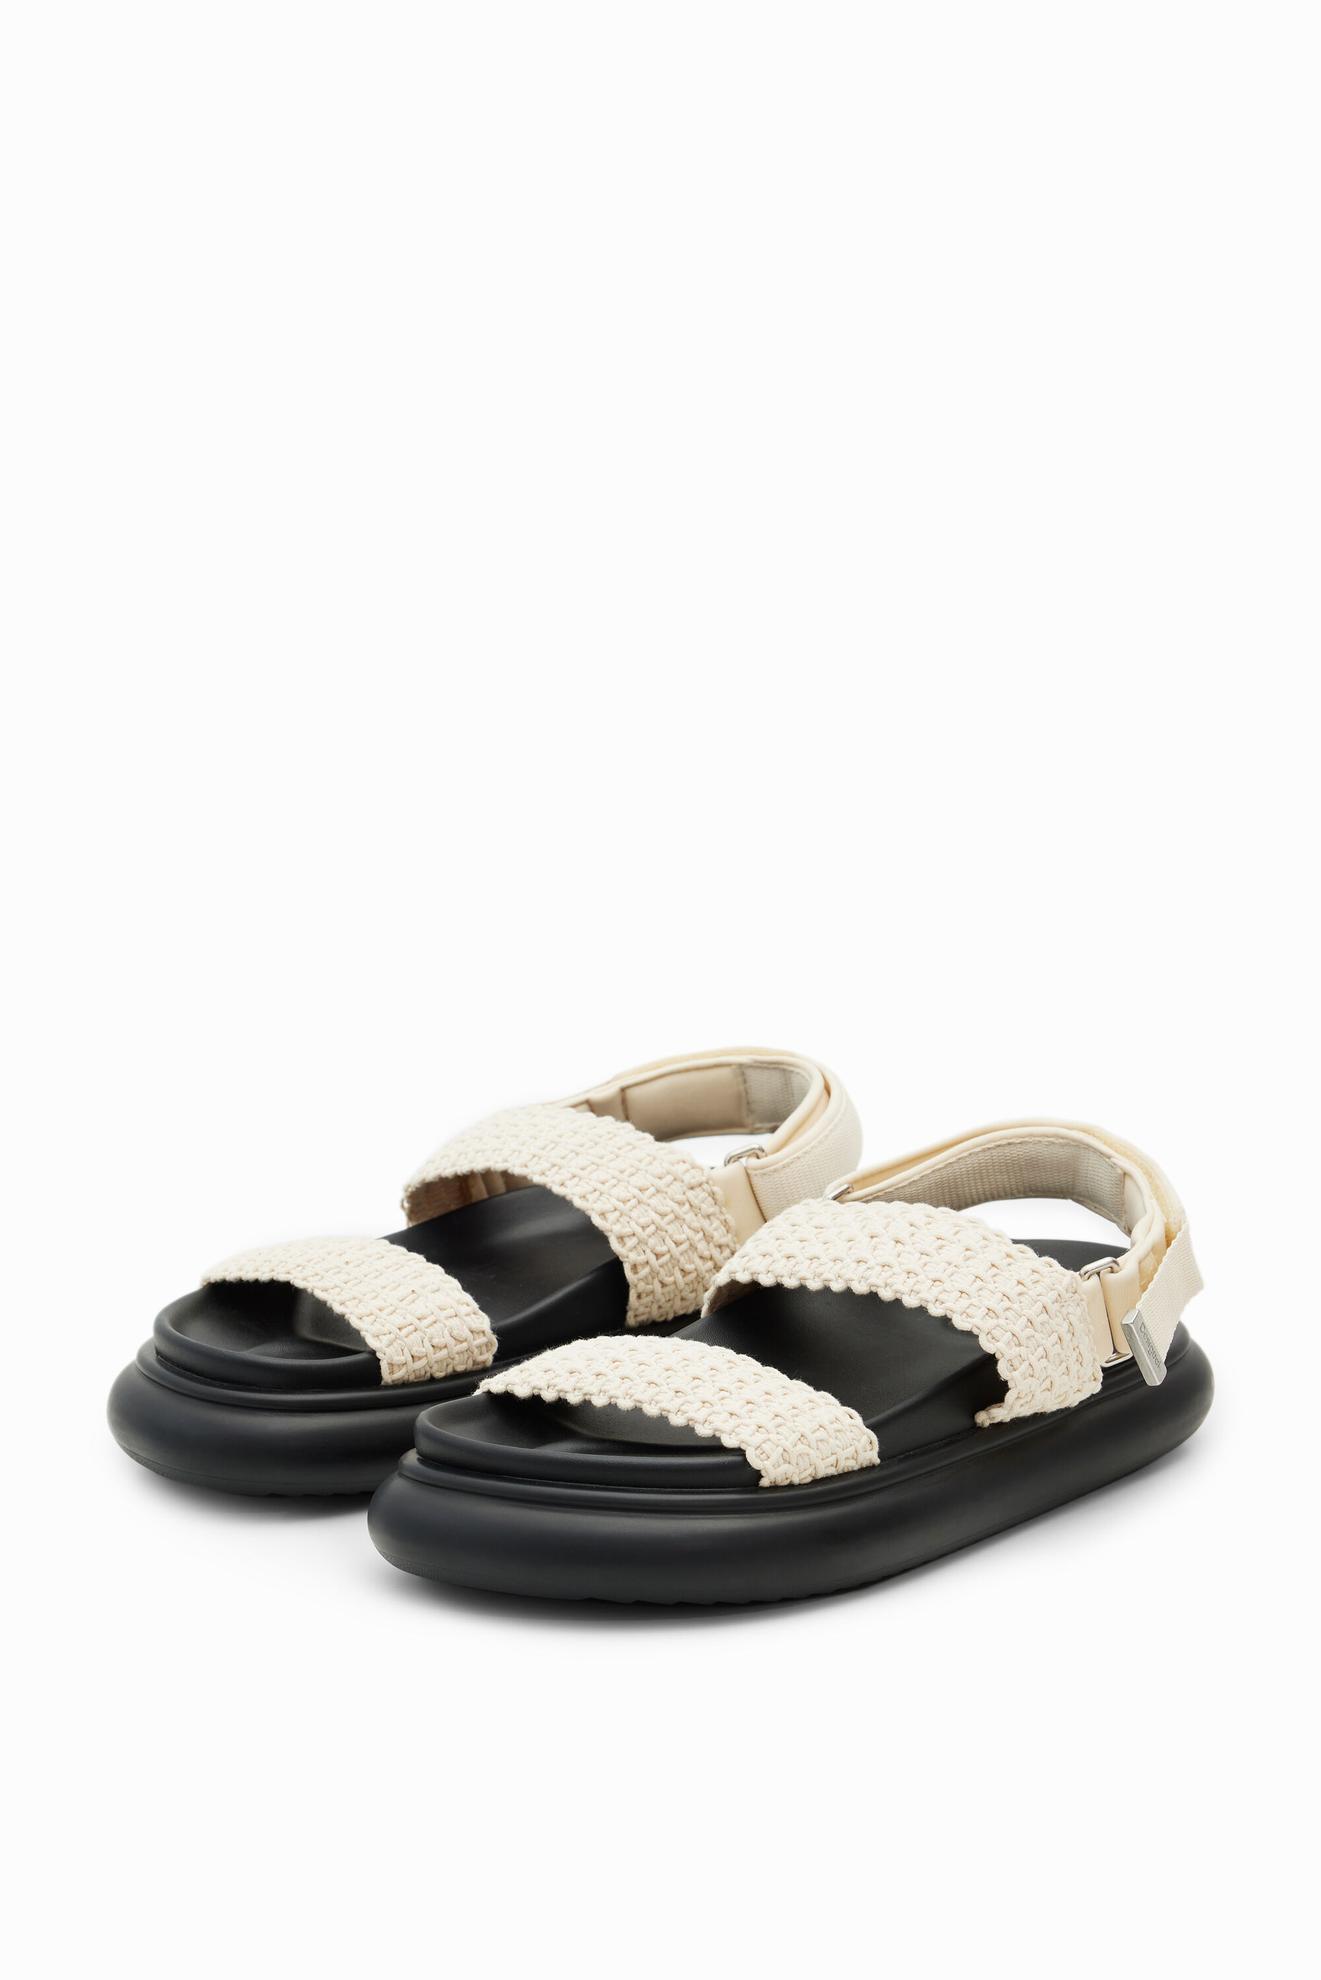 Crochet platform strap sandals för 1149 kr på Desigual